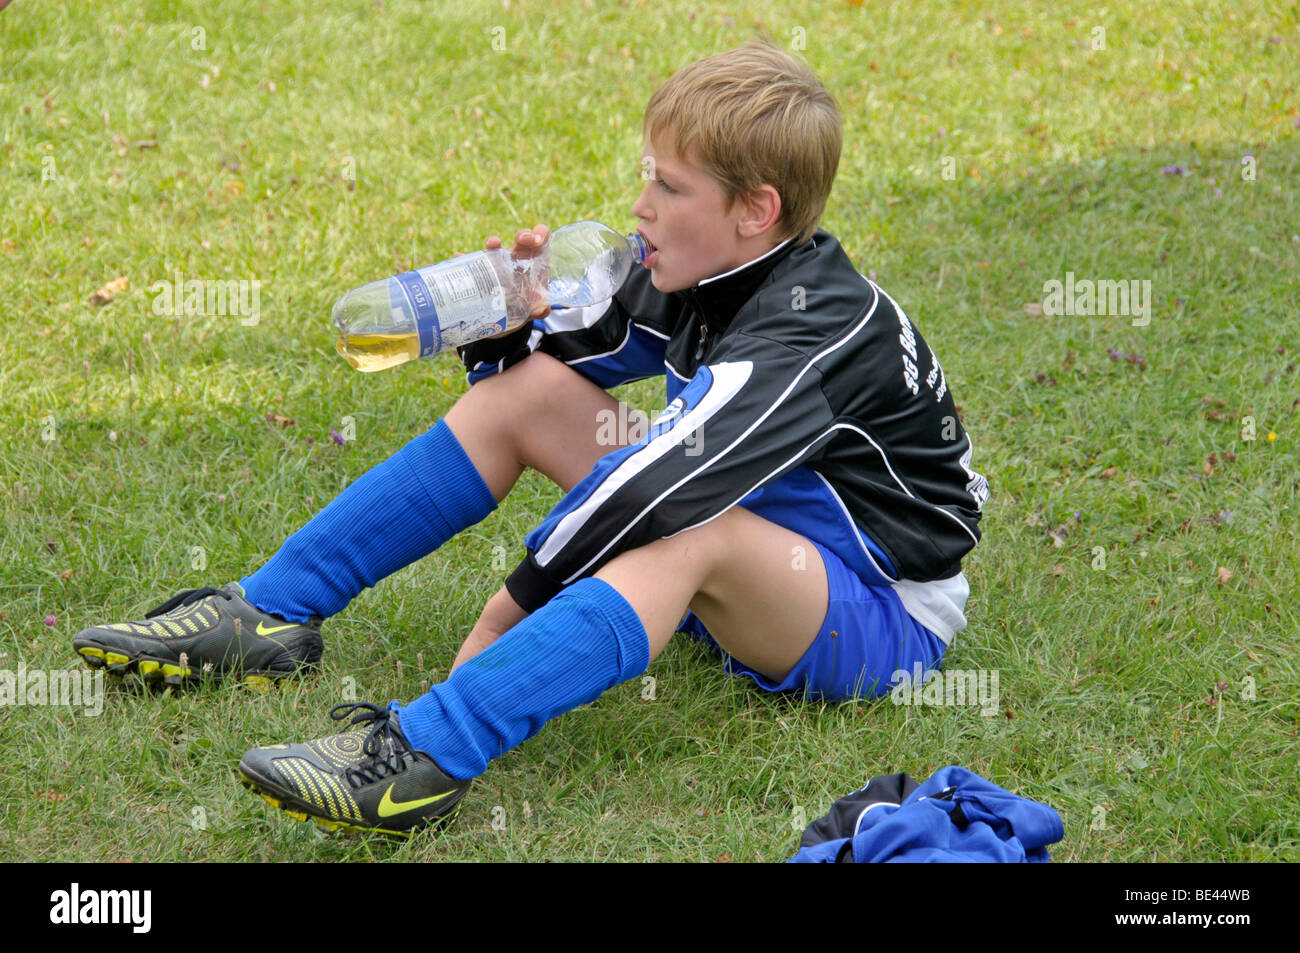 A neuf ans, joueur de la ligue junior E-2 pour le match d'attente pour commencer, children's soccer tournament, Baden-Wuerttember Banque D'Images